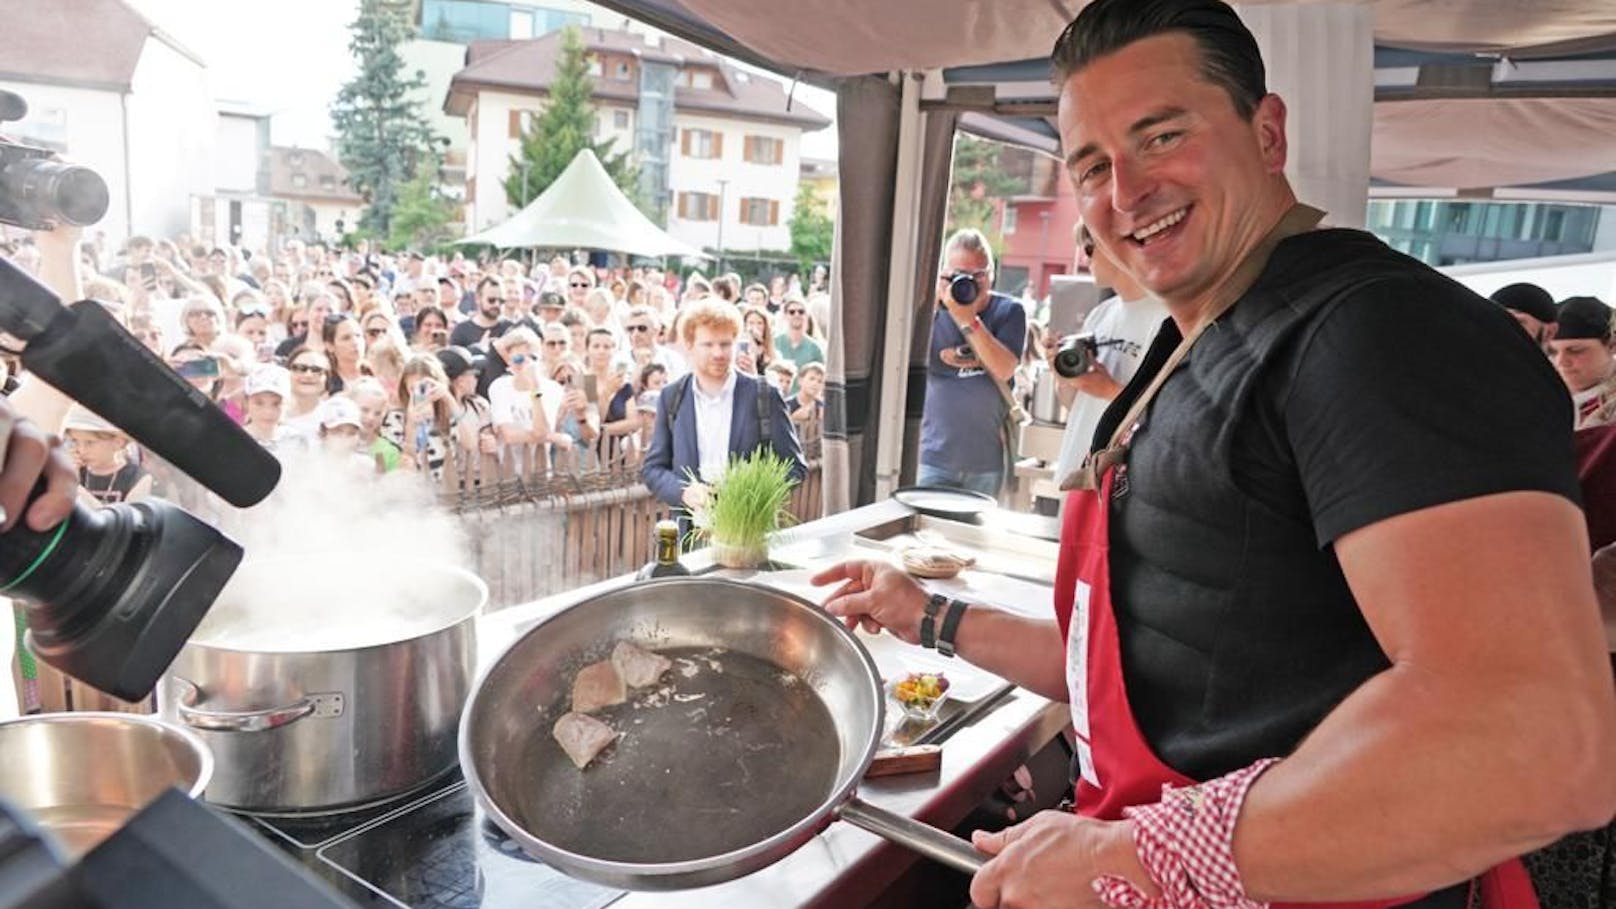 Andreas Gabalier stellte am Rathausplatz von Bruneck nicht nur seine neue Single "Südtirol" vor, sondern schwang auch den Kochlöffel.